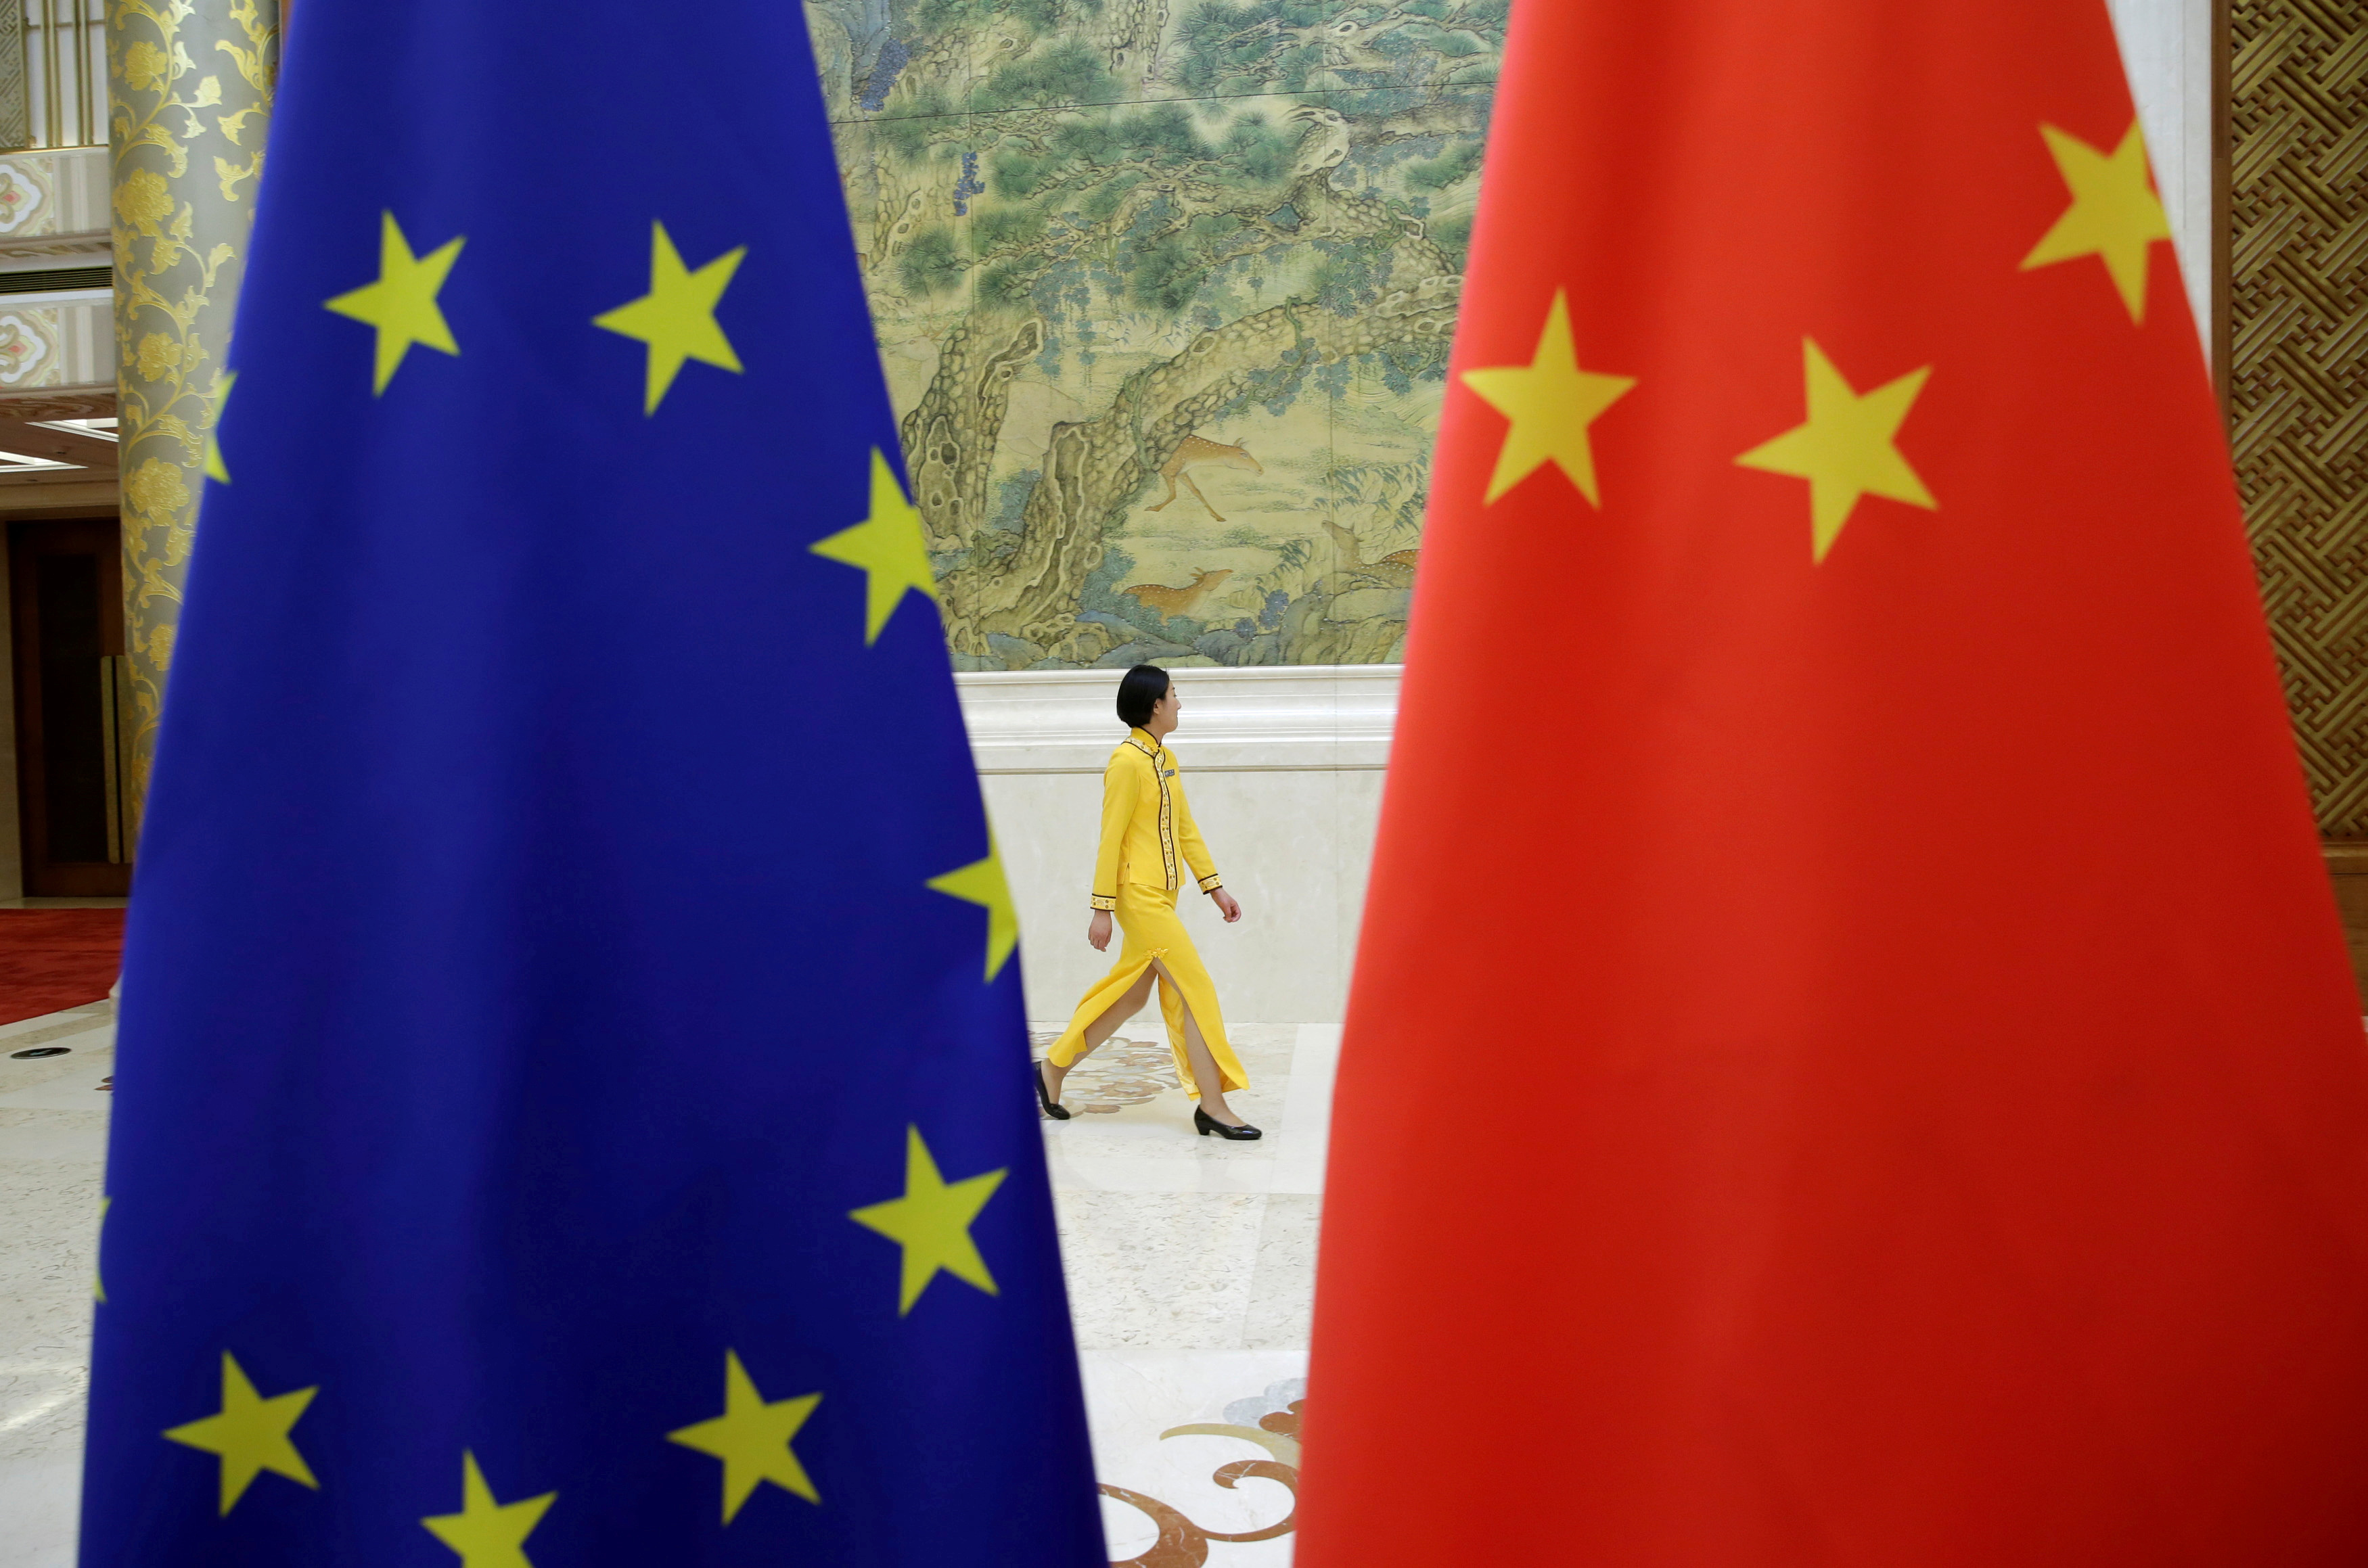 La Chine met en garde l'Europe et l'Inde sur leur volonté d'indépendance